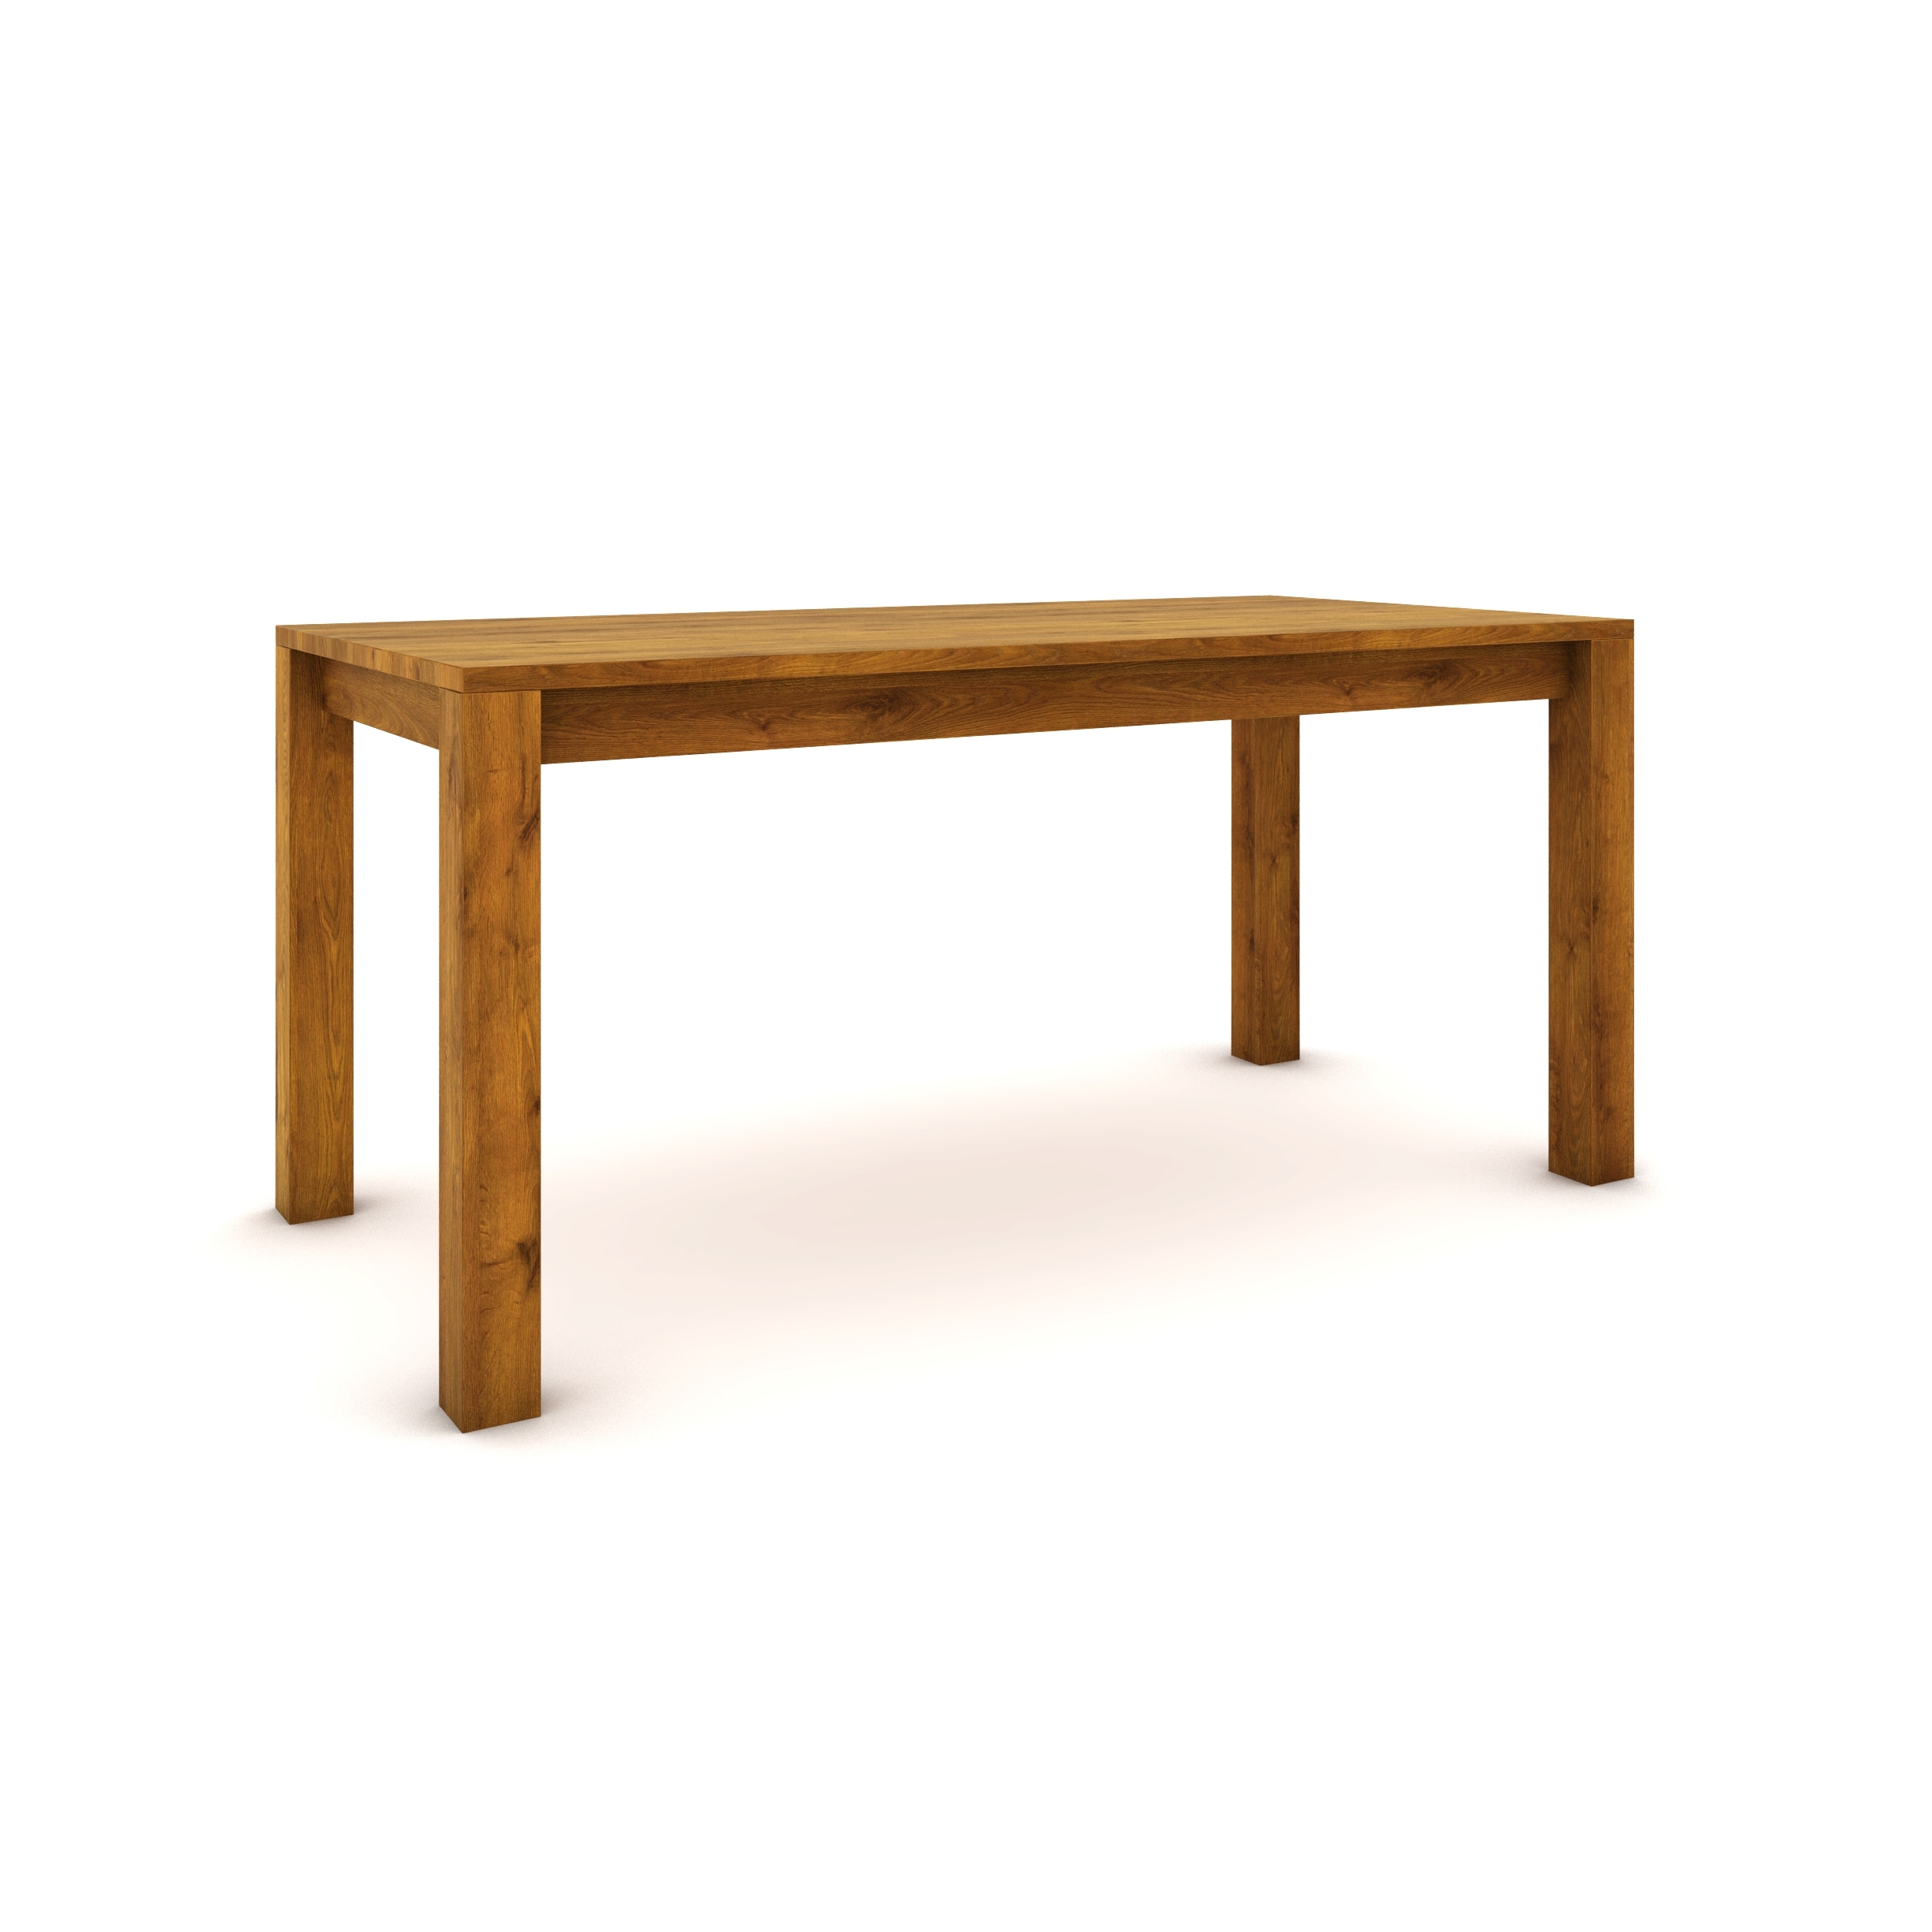 Dubový stůl 160 x 80 cm , jantarový